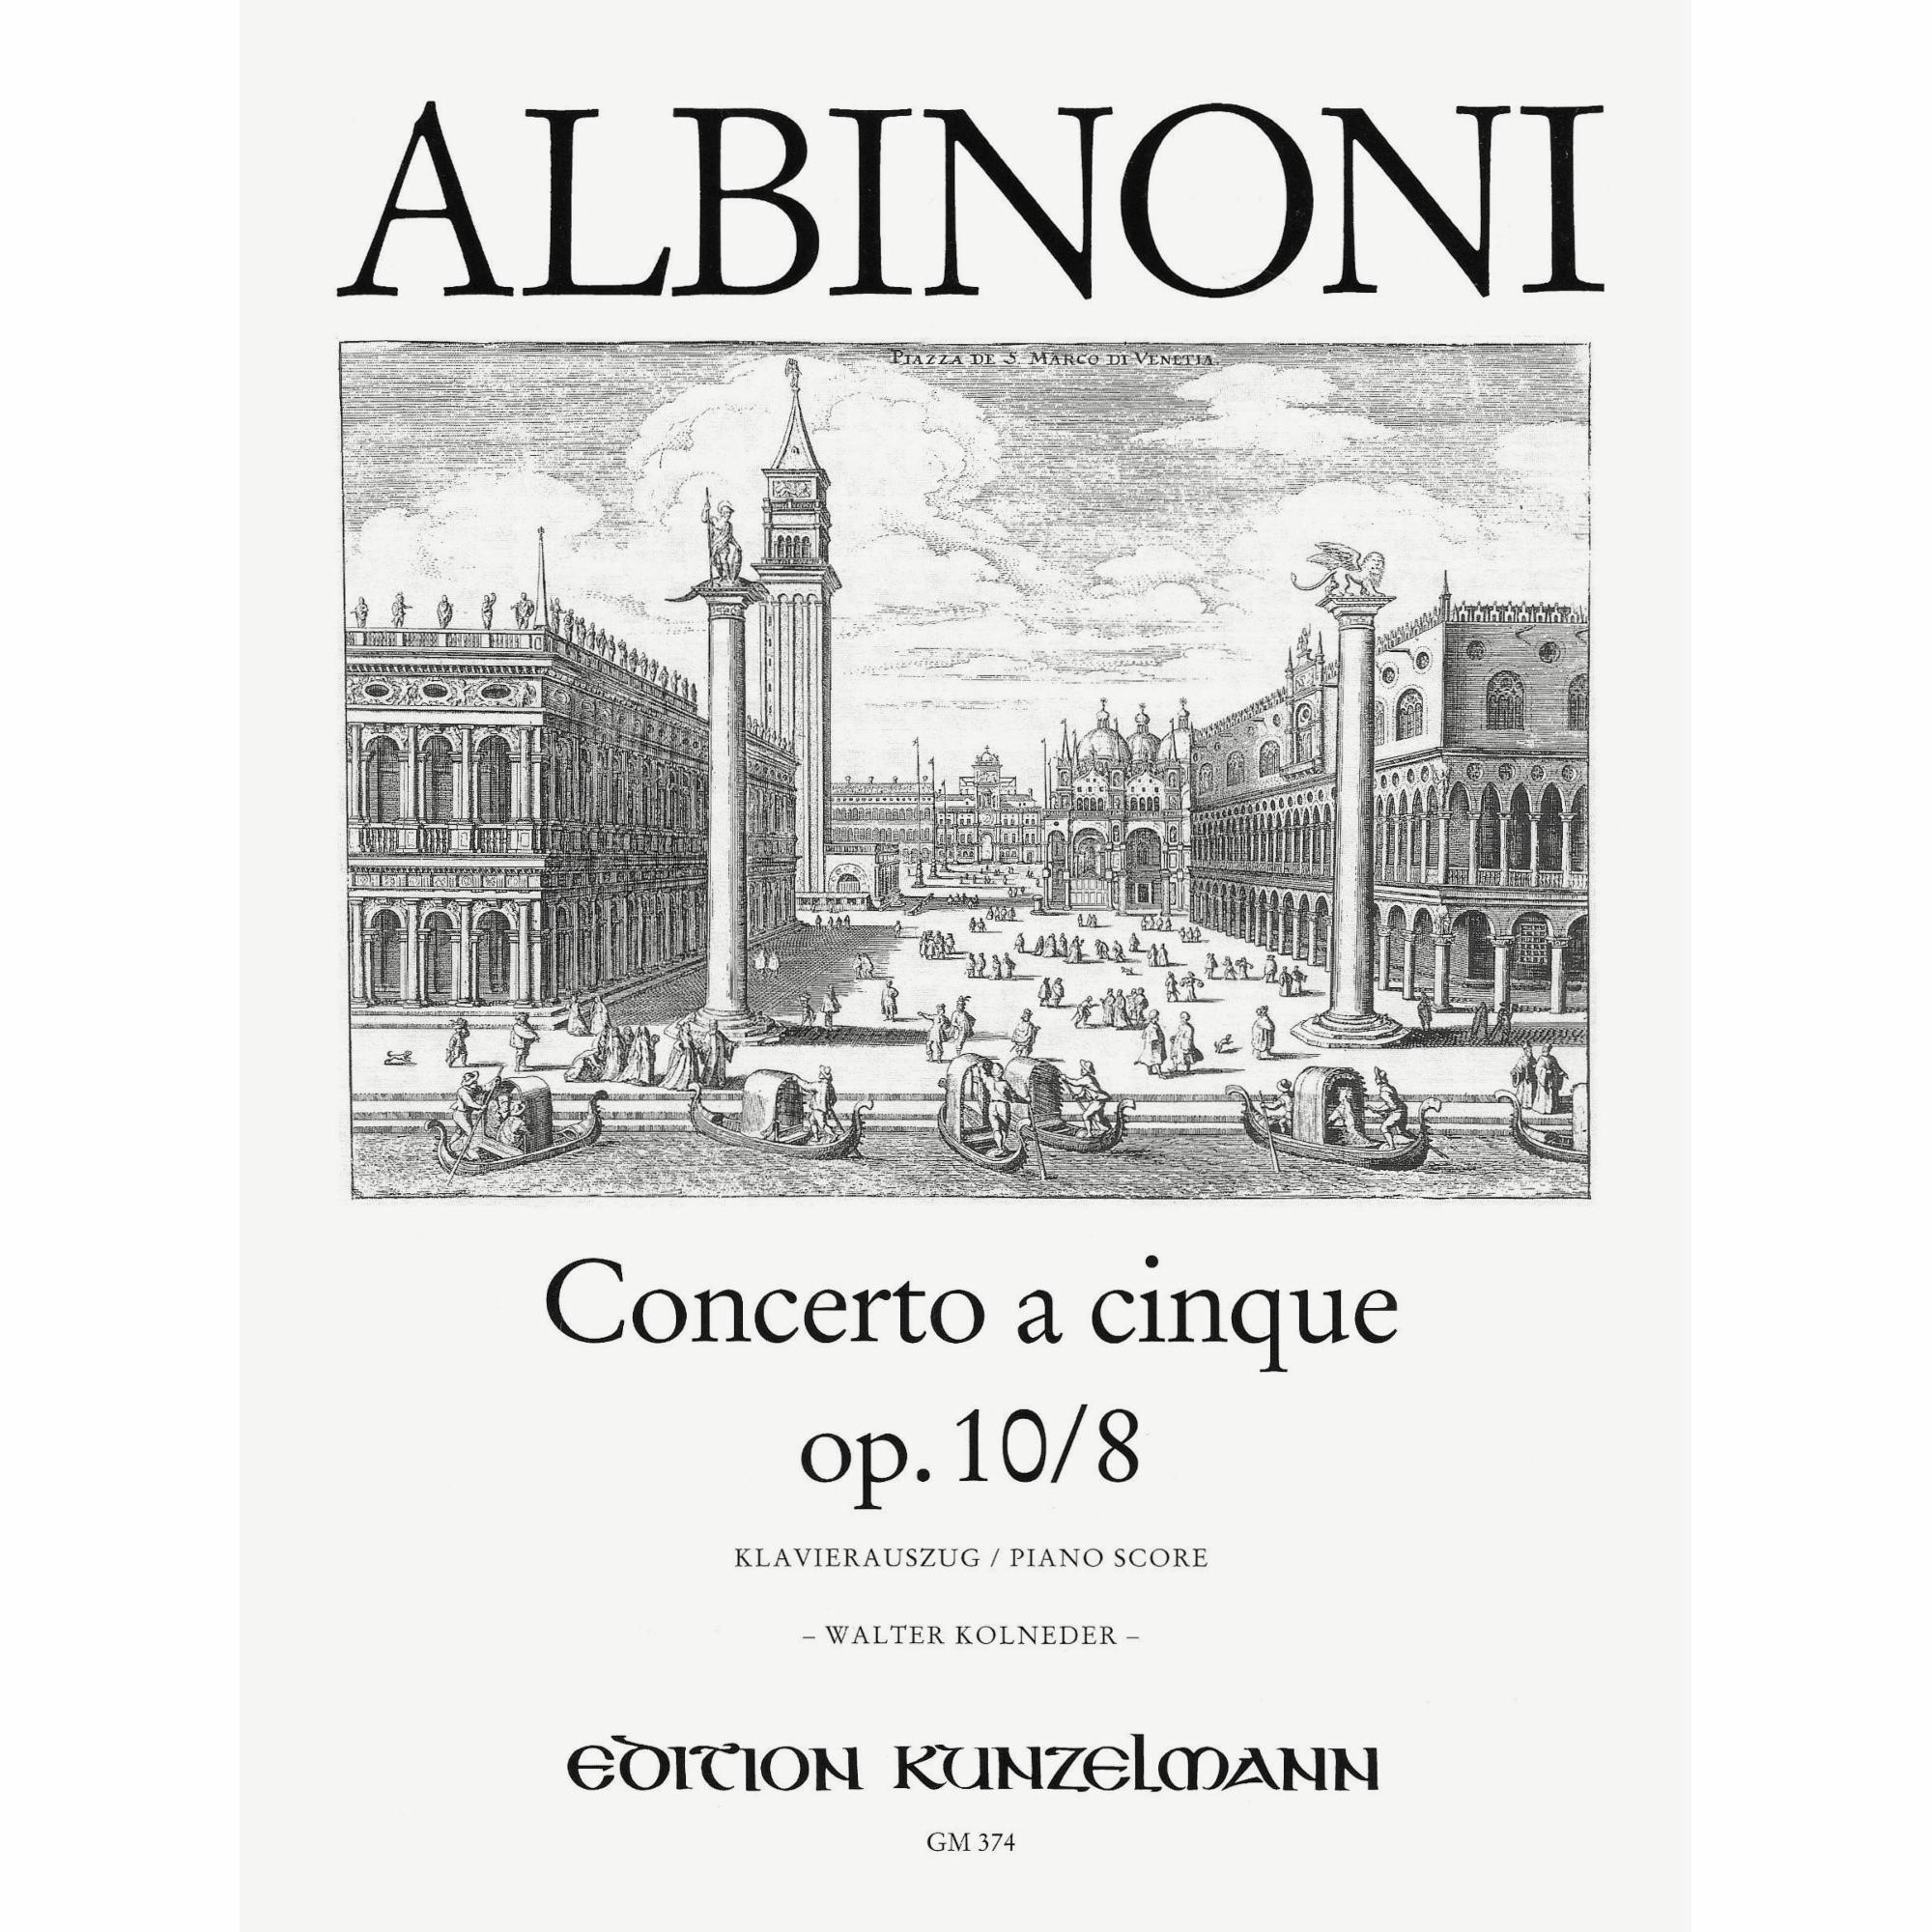 Albinoni -- Concerto a cinque, Op. 10/8 for Violin and Piano